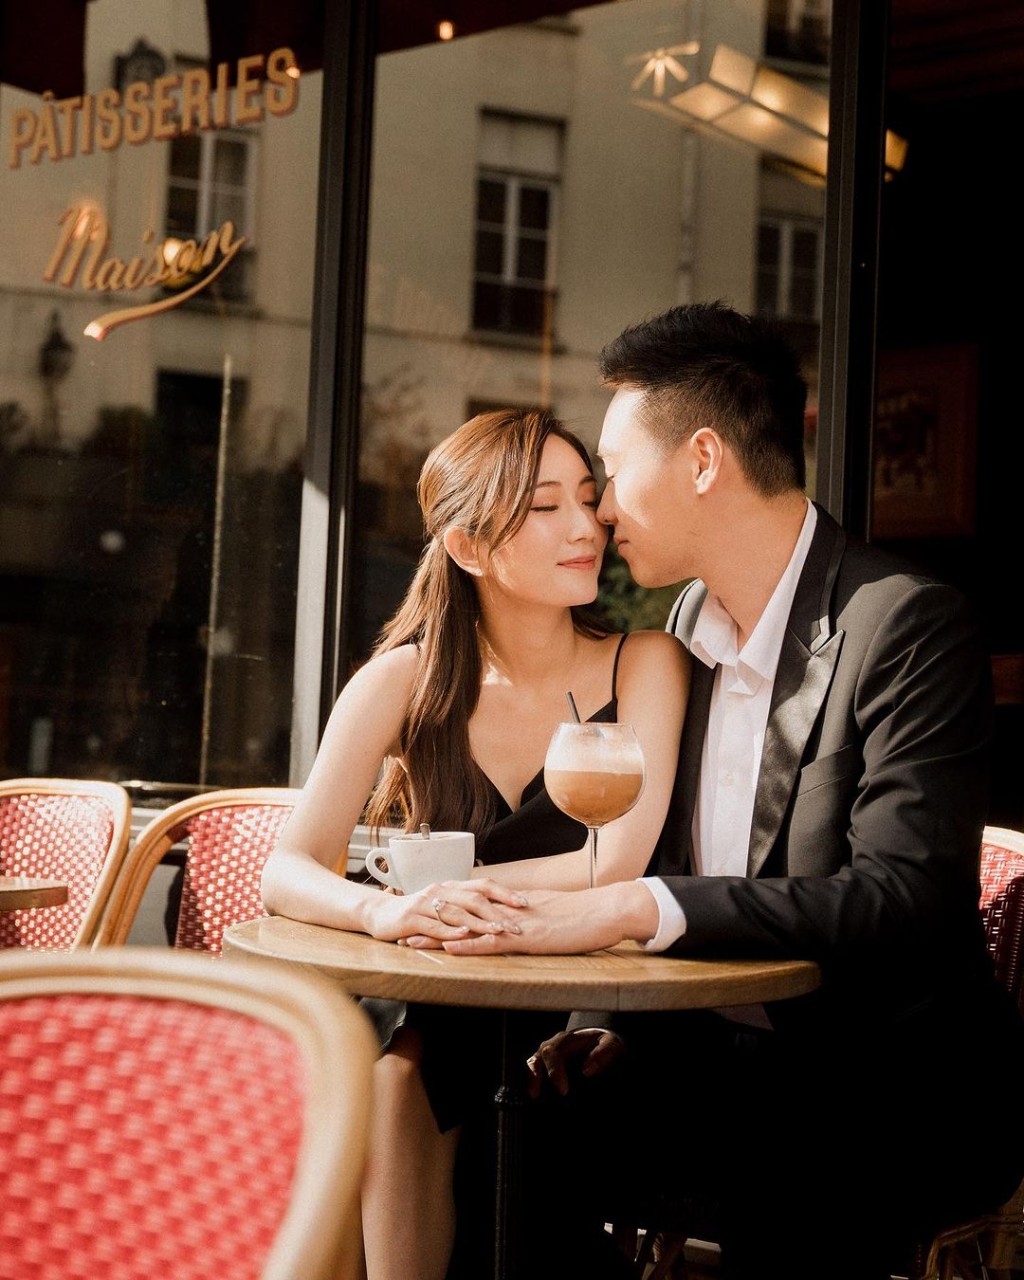 蔡嘉欣與未婚夫在巴黎街頭拍照。